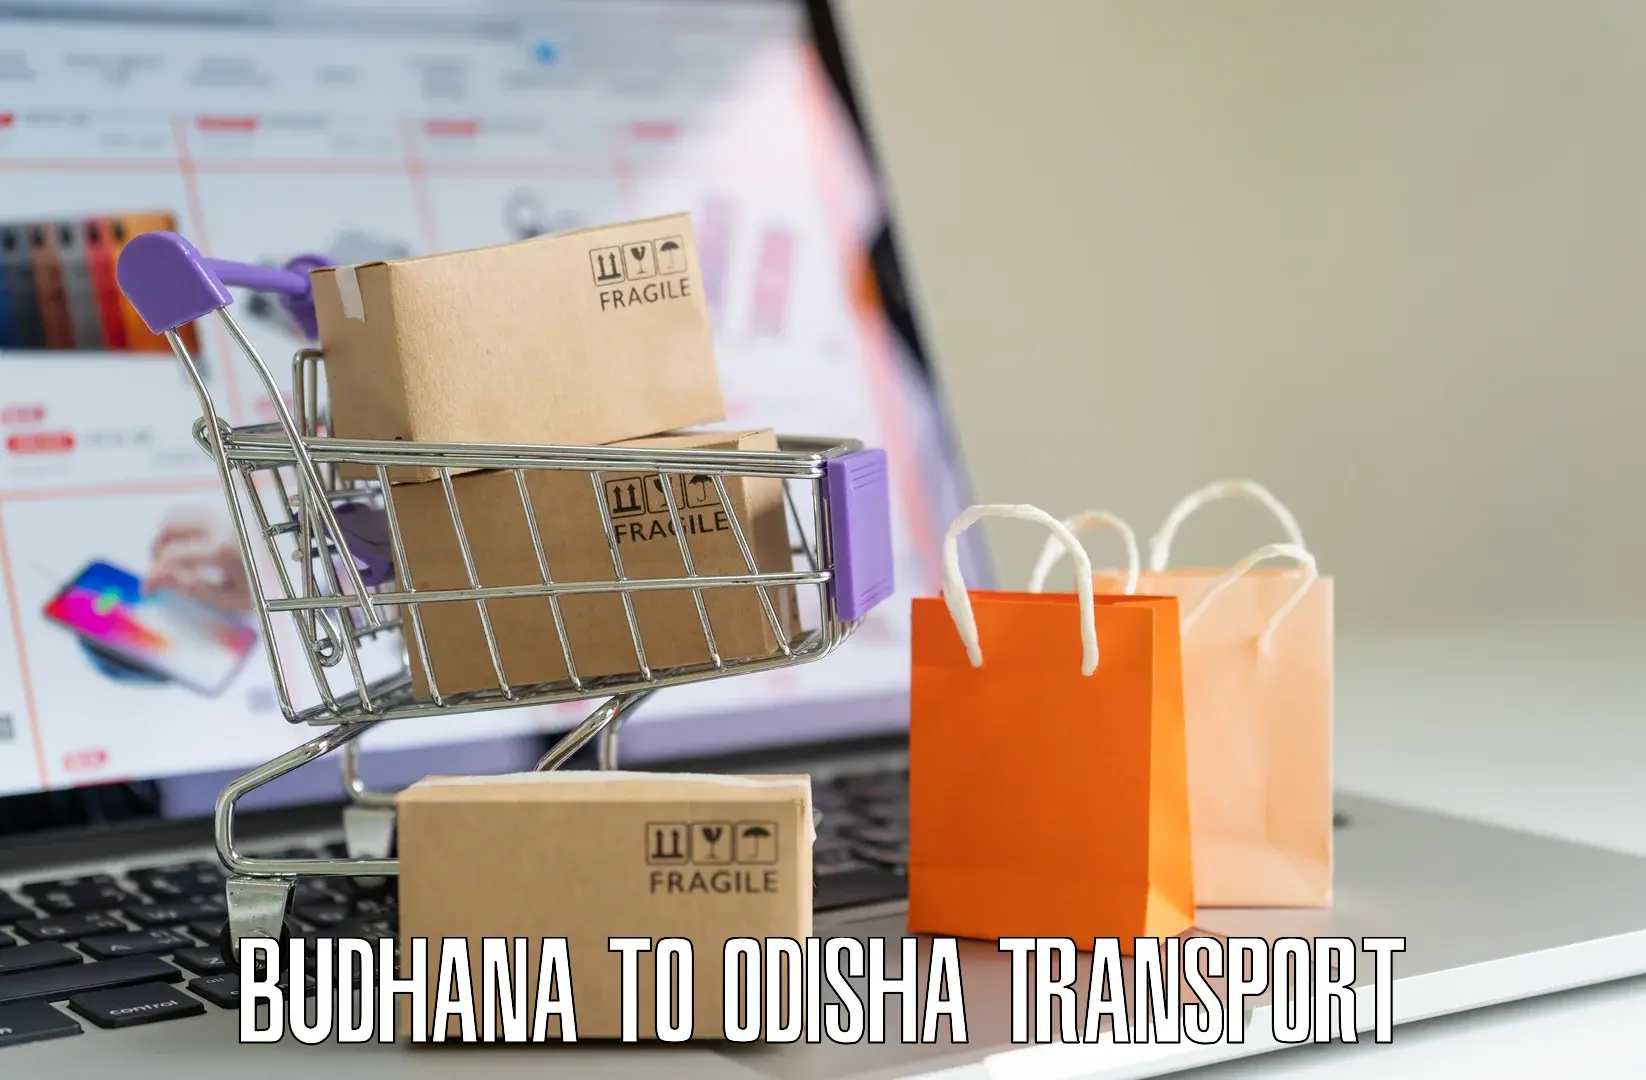 Intercity transport Budhana to Mohana